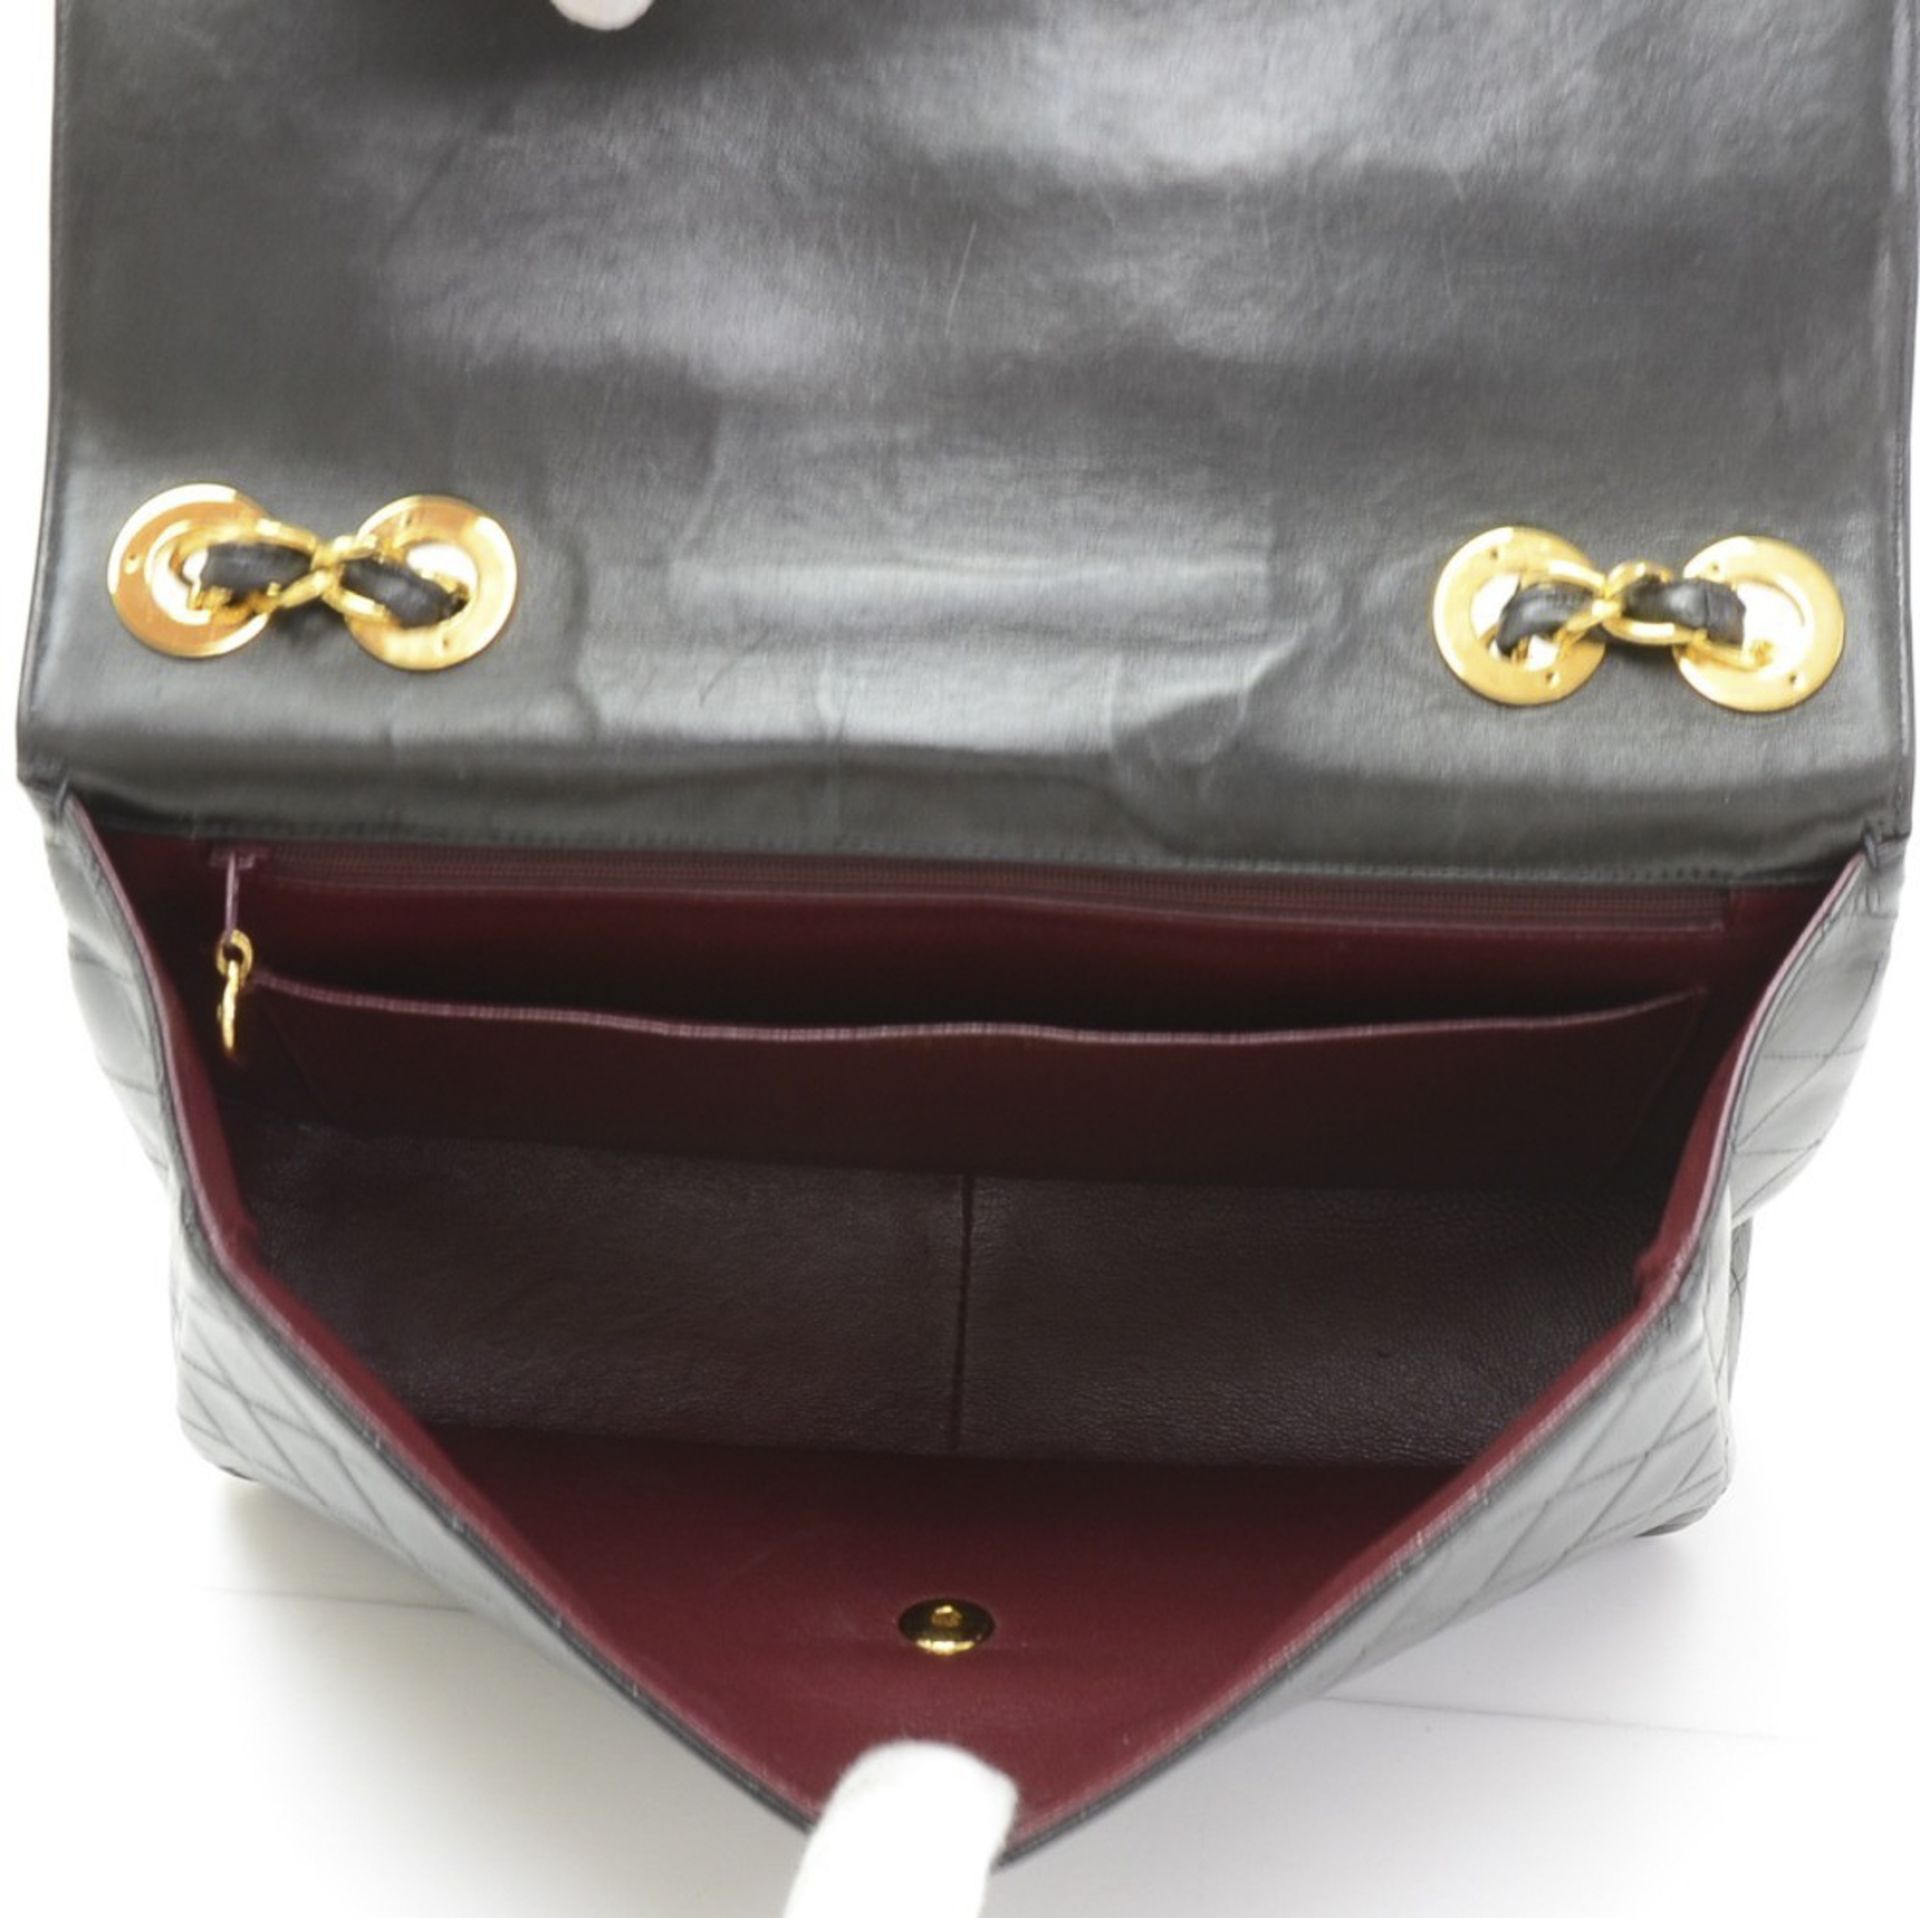 Chanel, Jumbo XL Flap Bag - Image 11 of 12